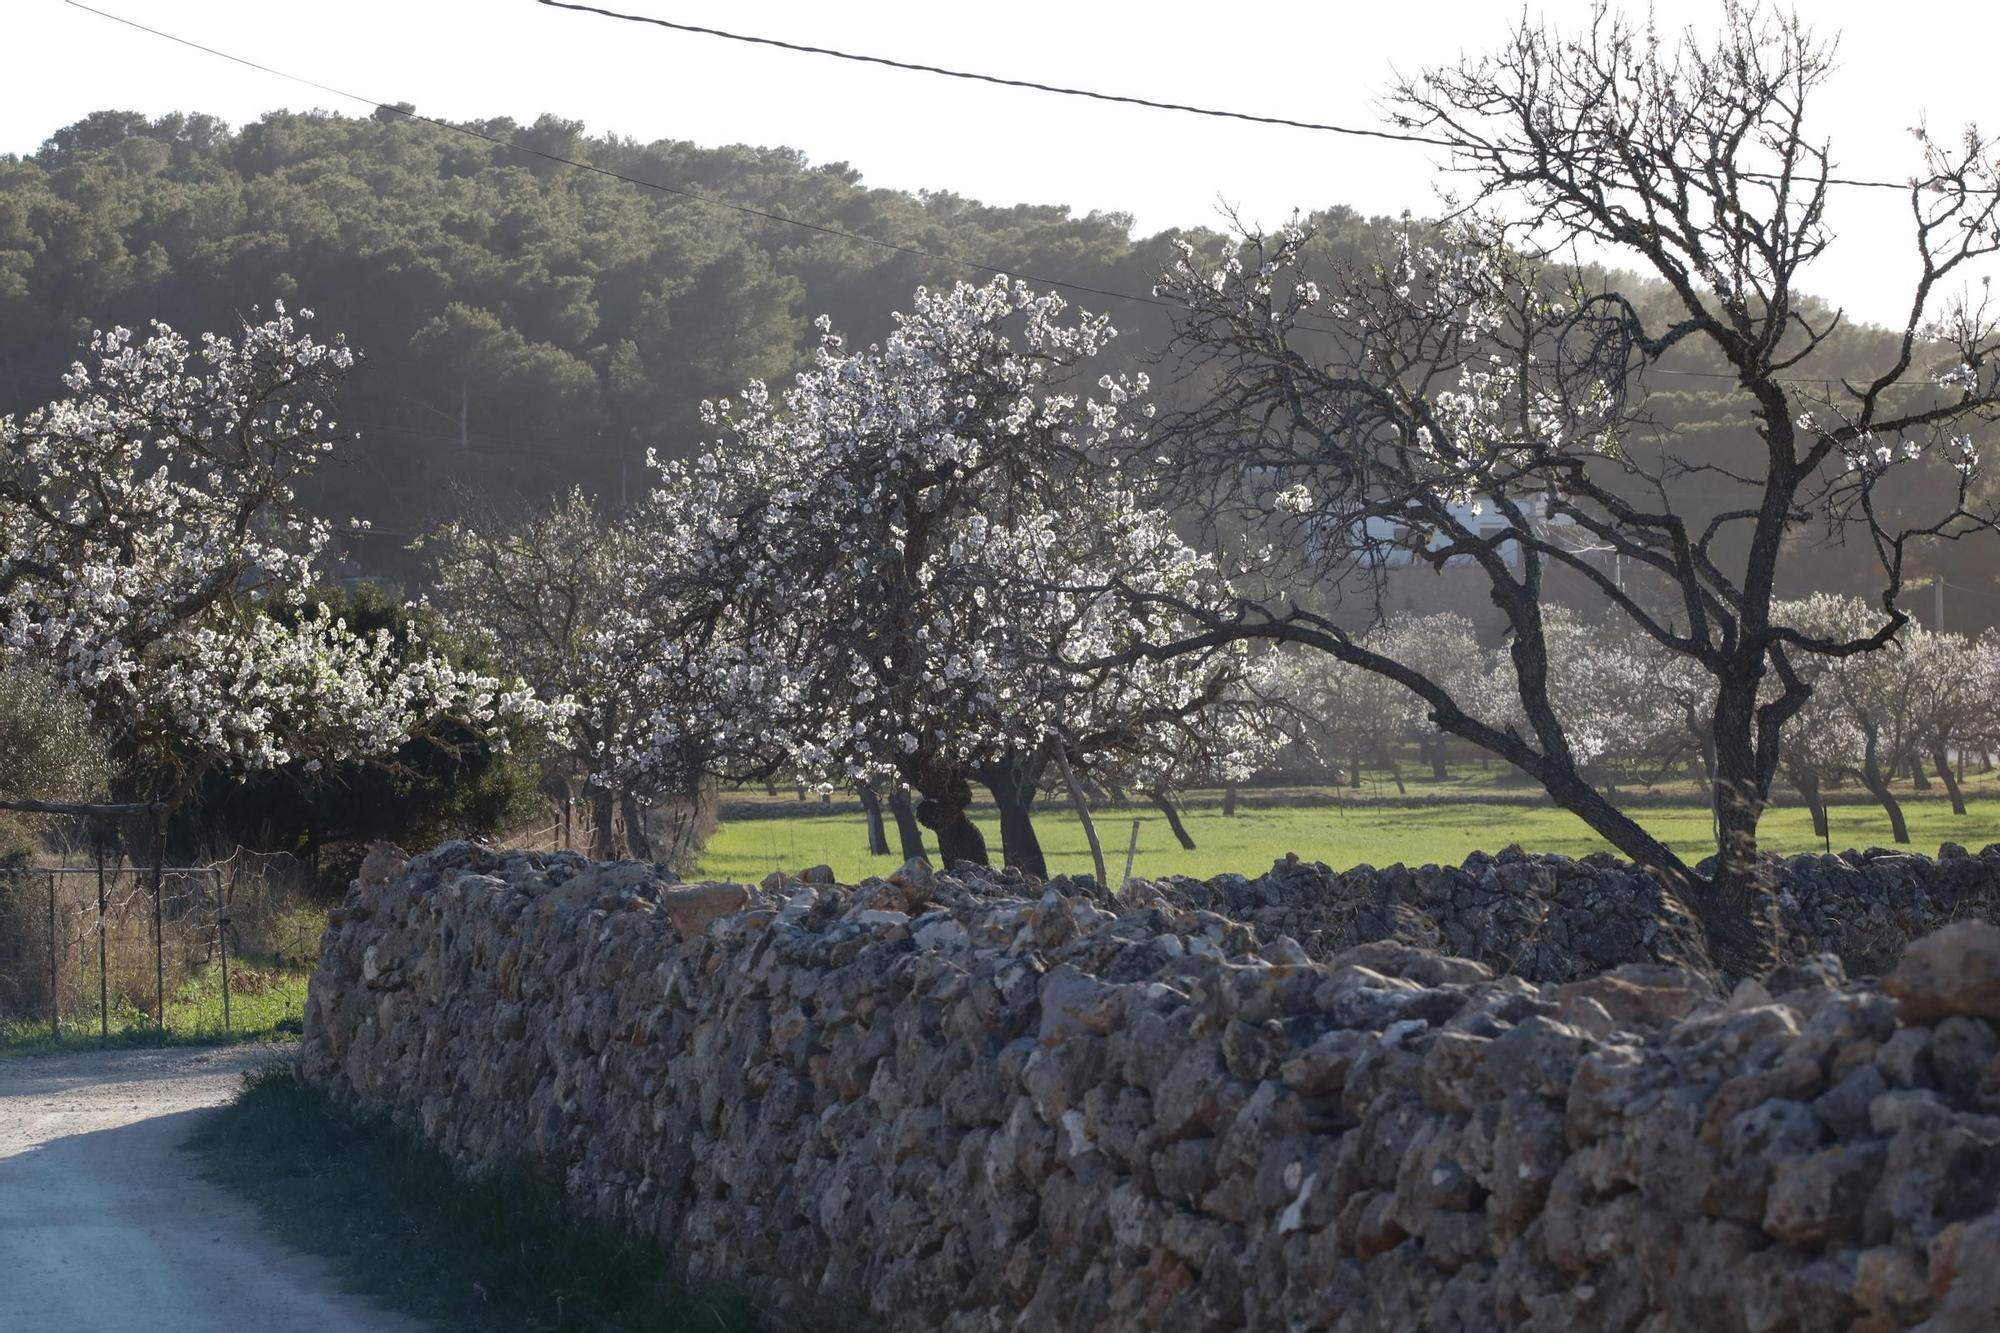 Sant Antoni quiere frenar el aluvión de gente de Ibiza que acude a ver los almendros en flor